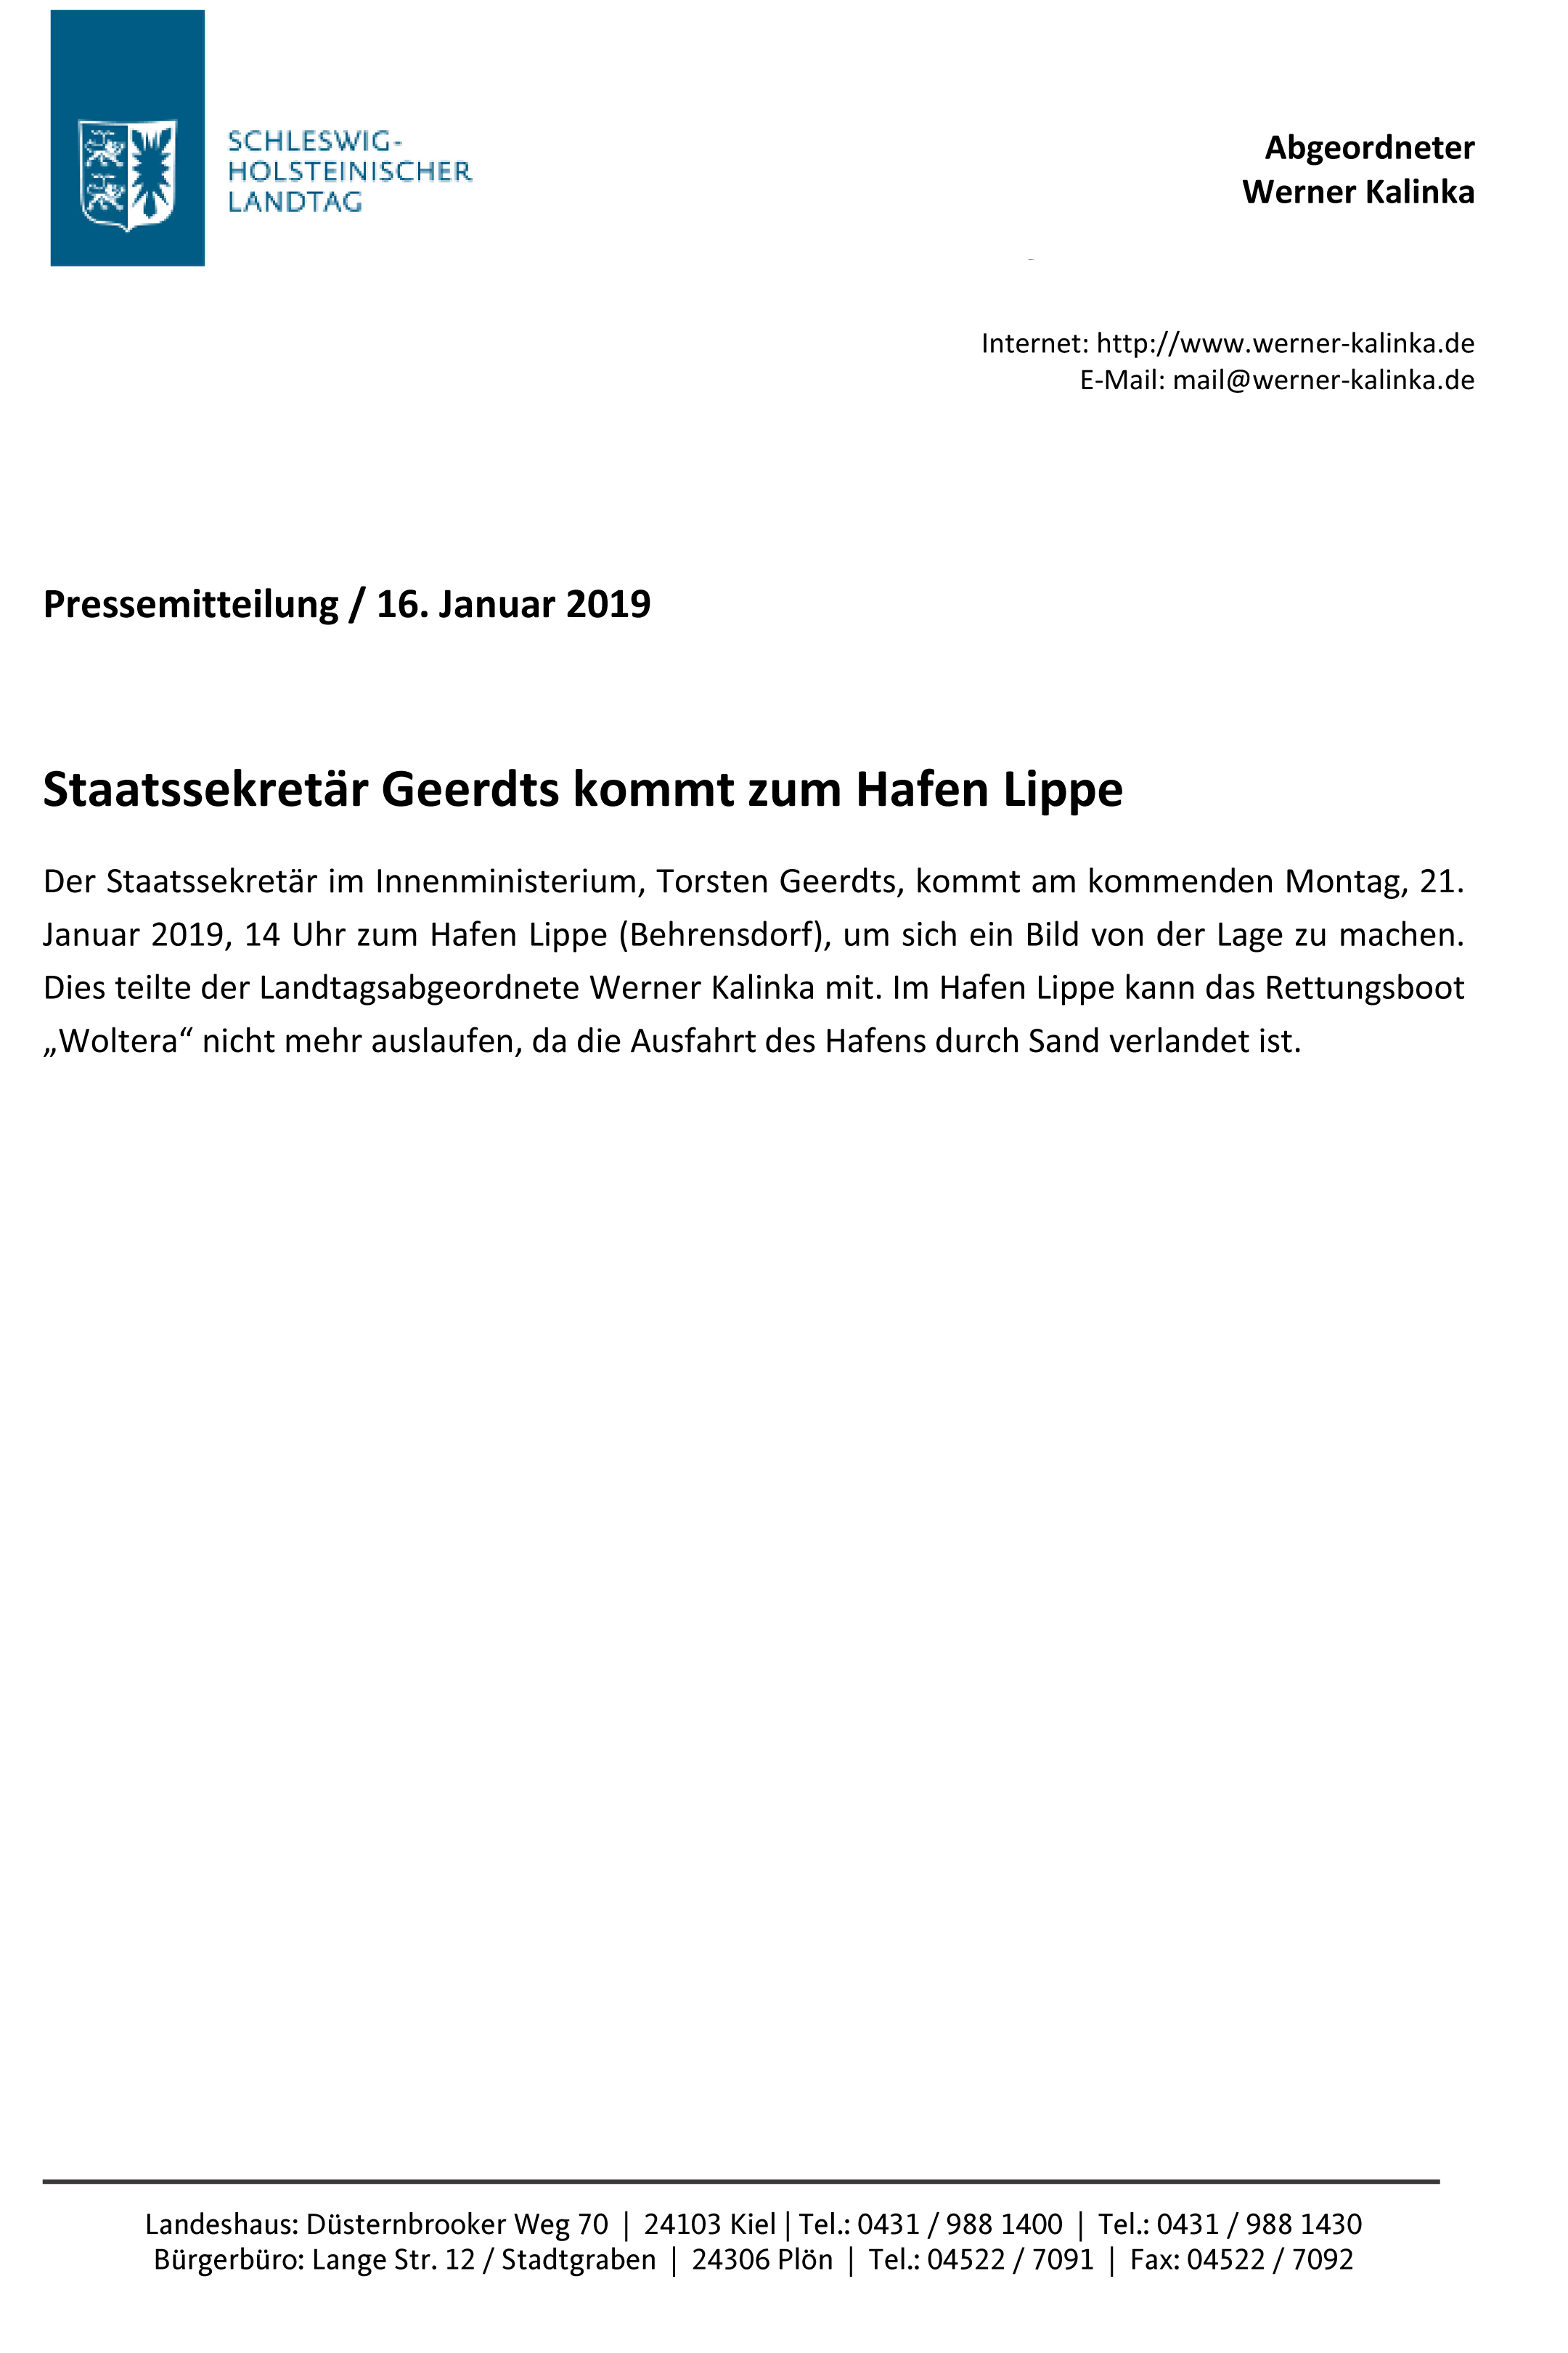 PM-Lippe-2019-01-16